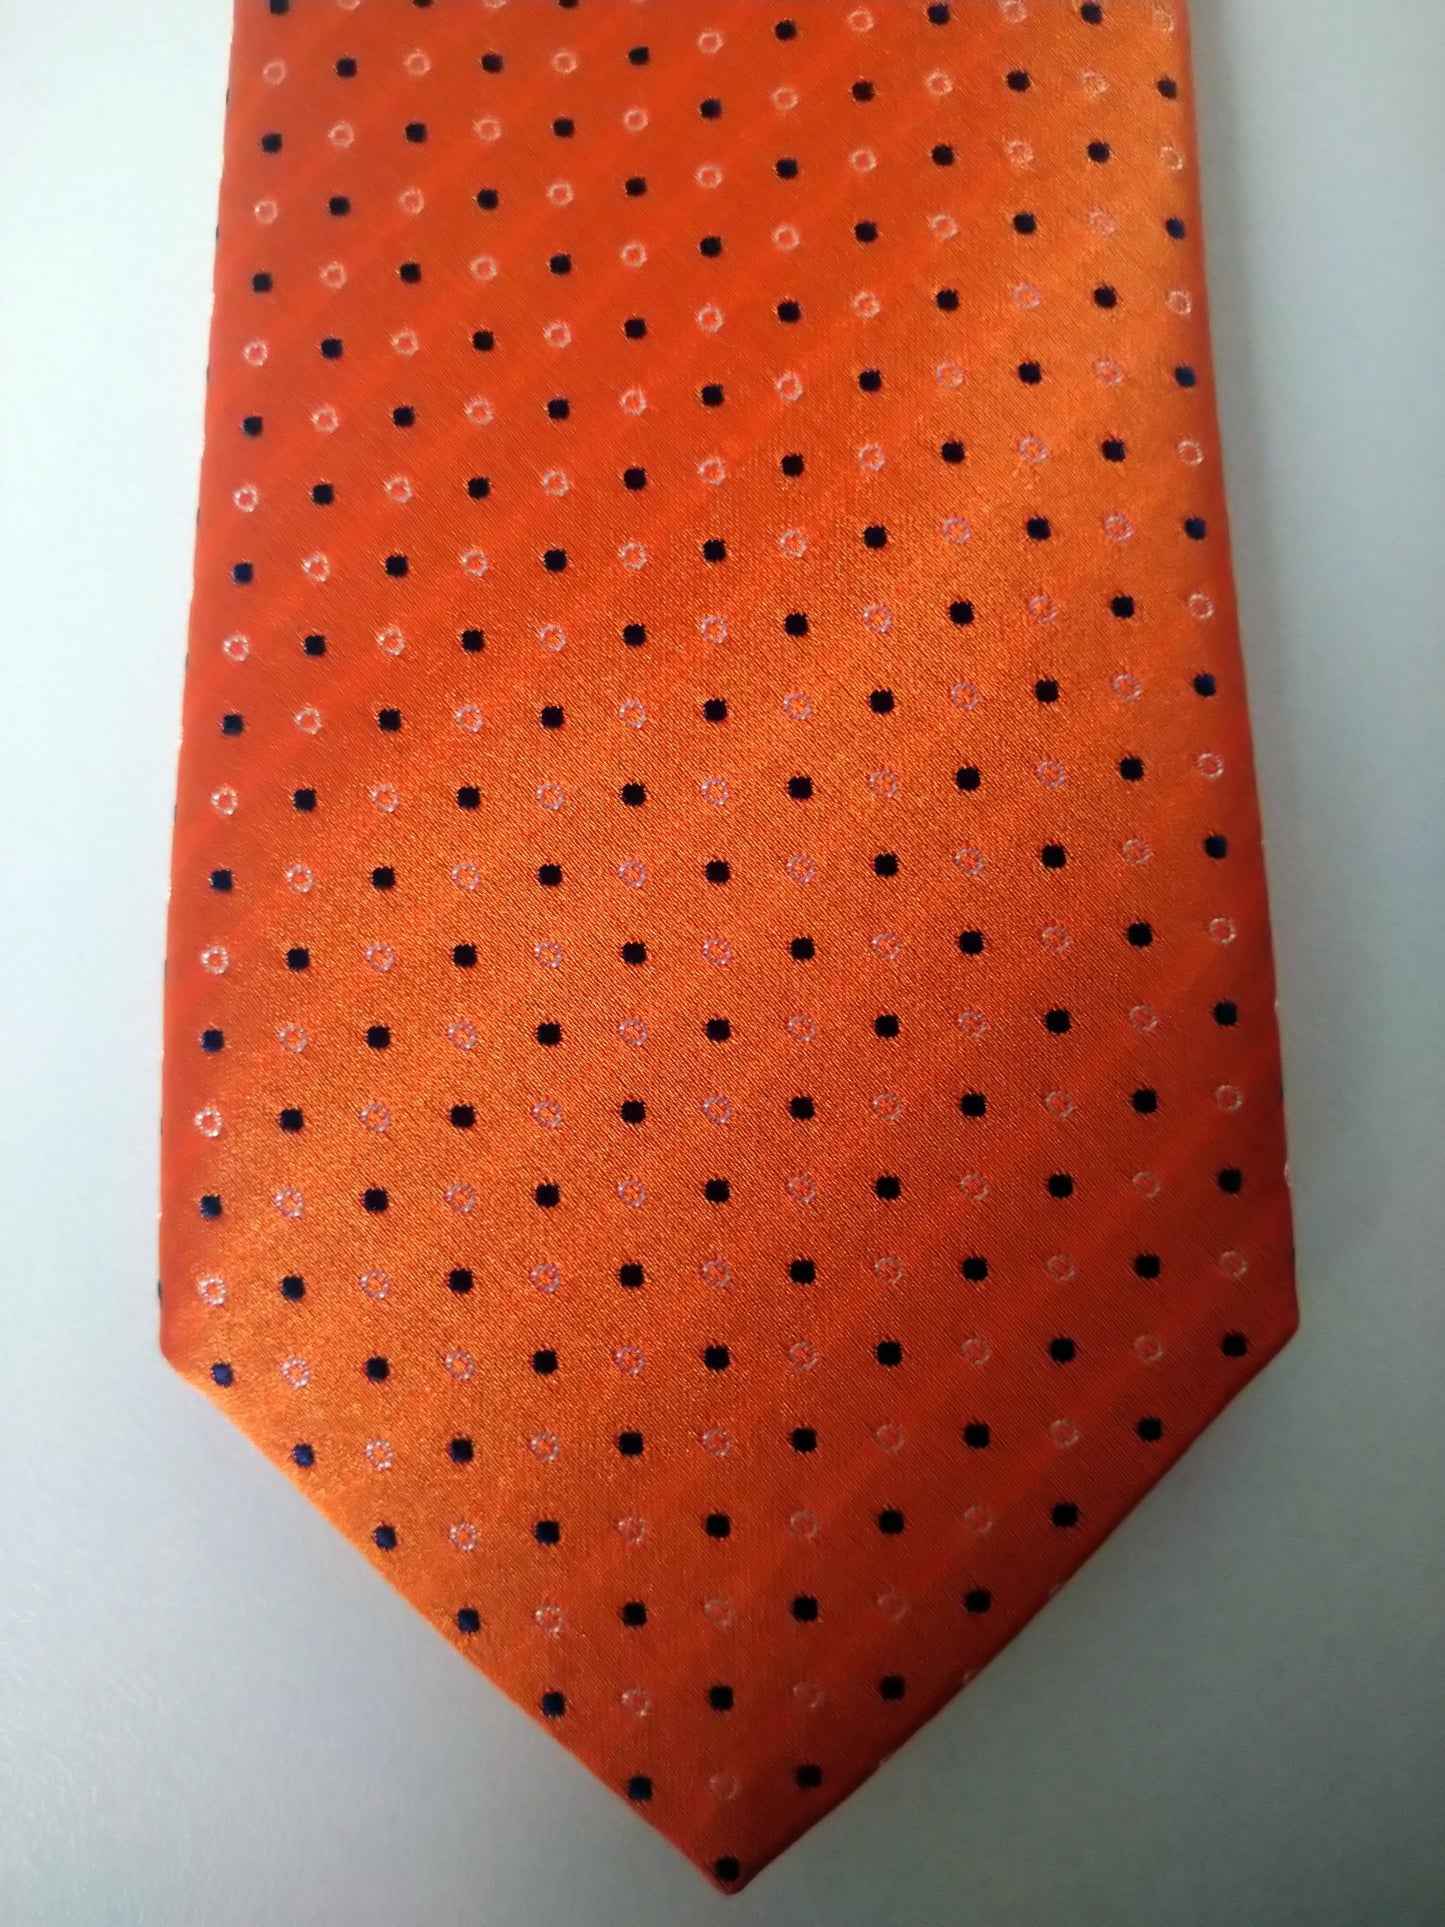 Eton tie. Color orange. 100% silk